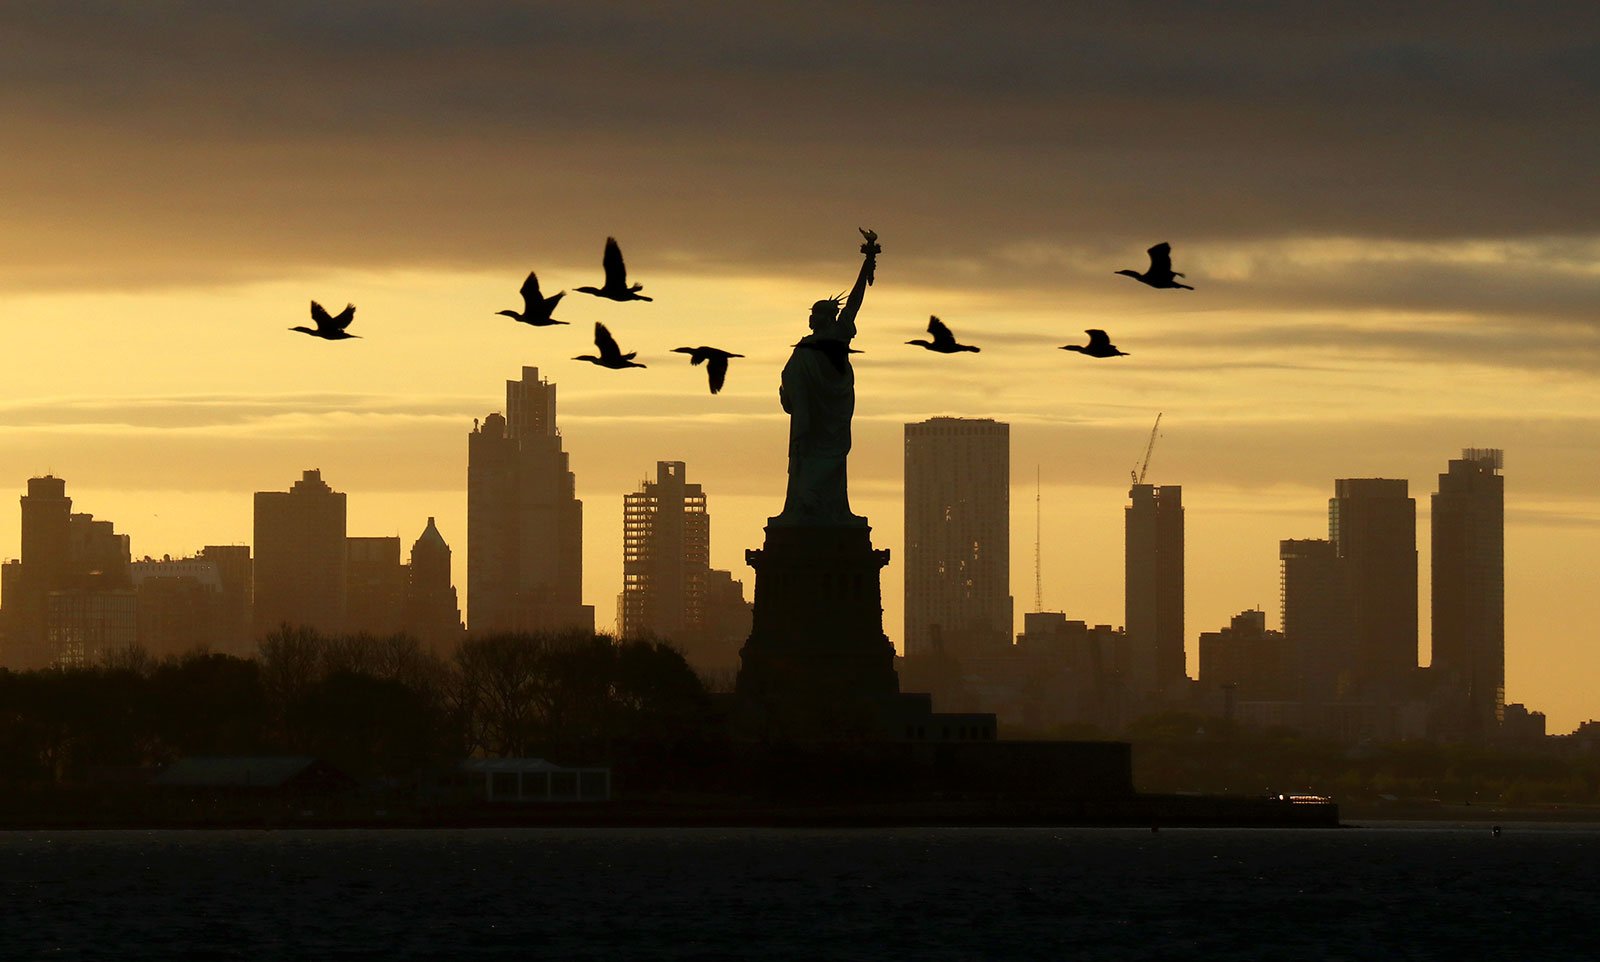 NYC skyline silhouette with birds